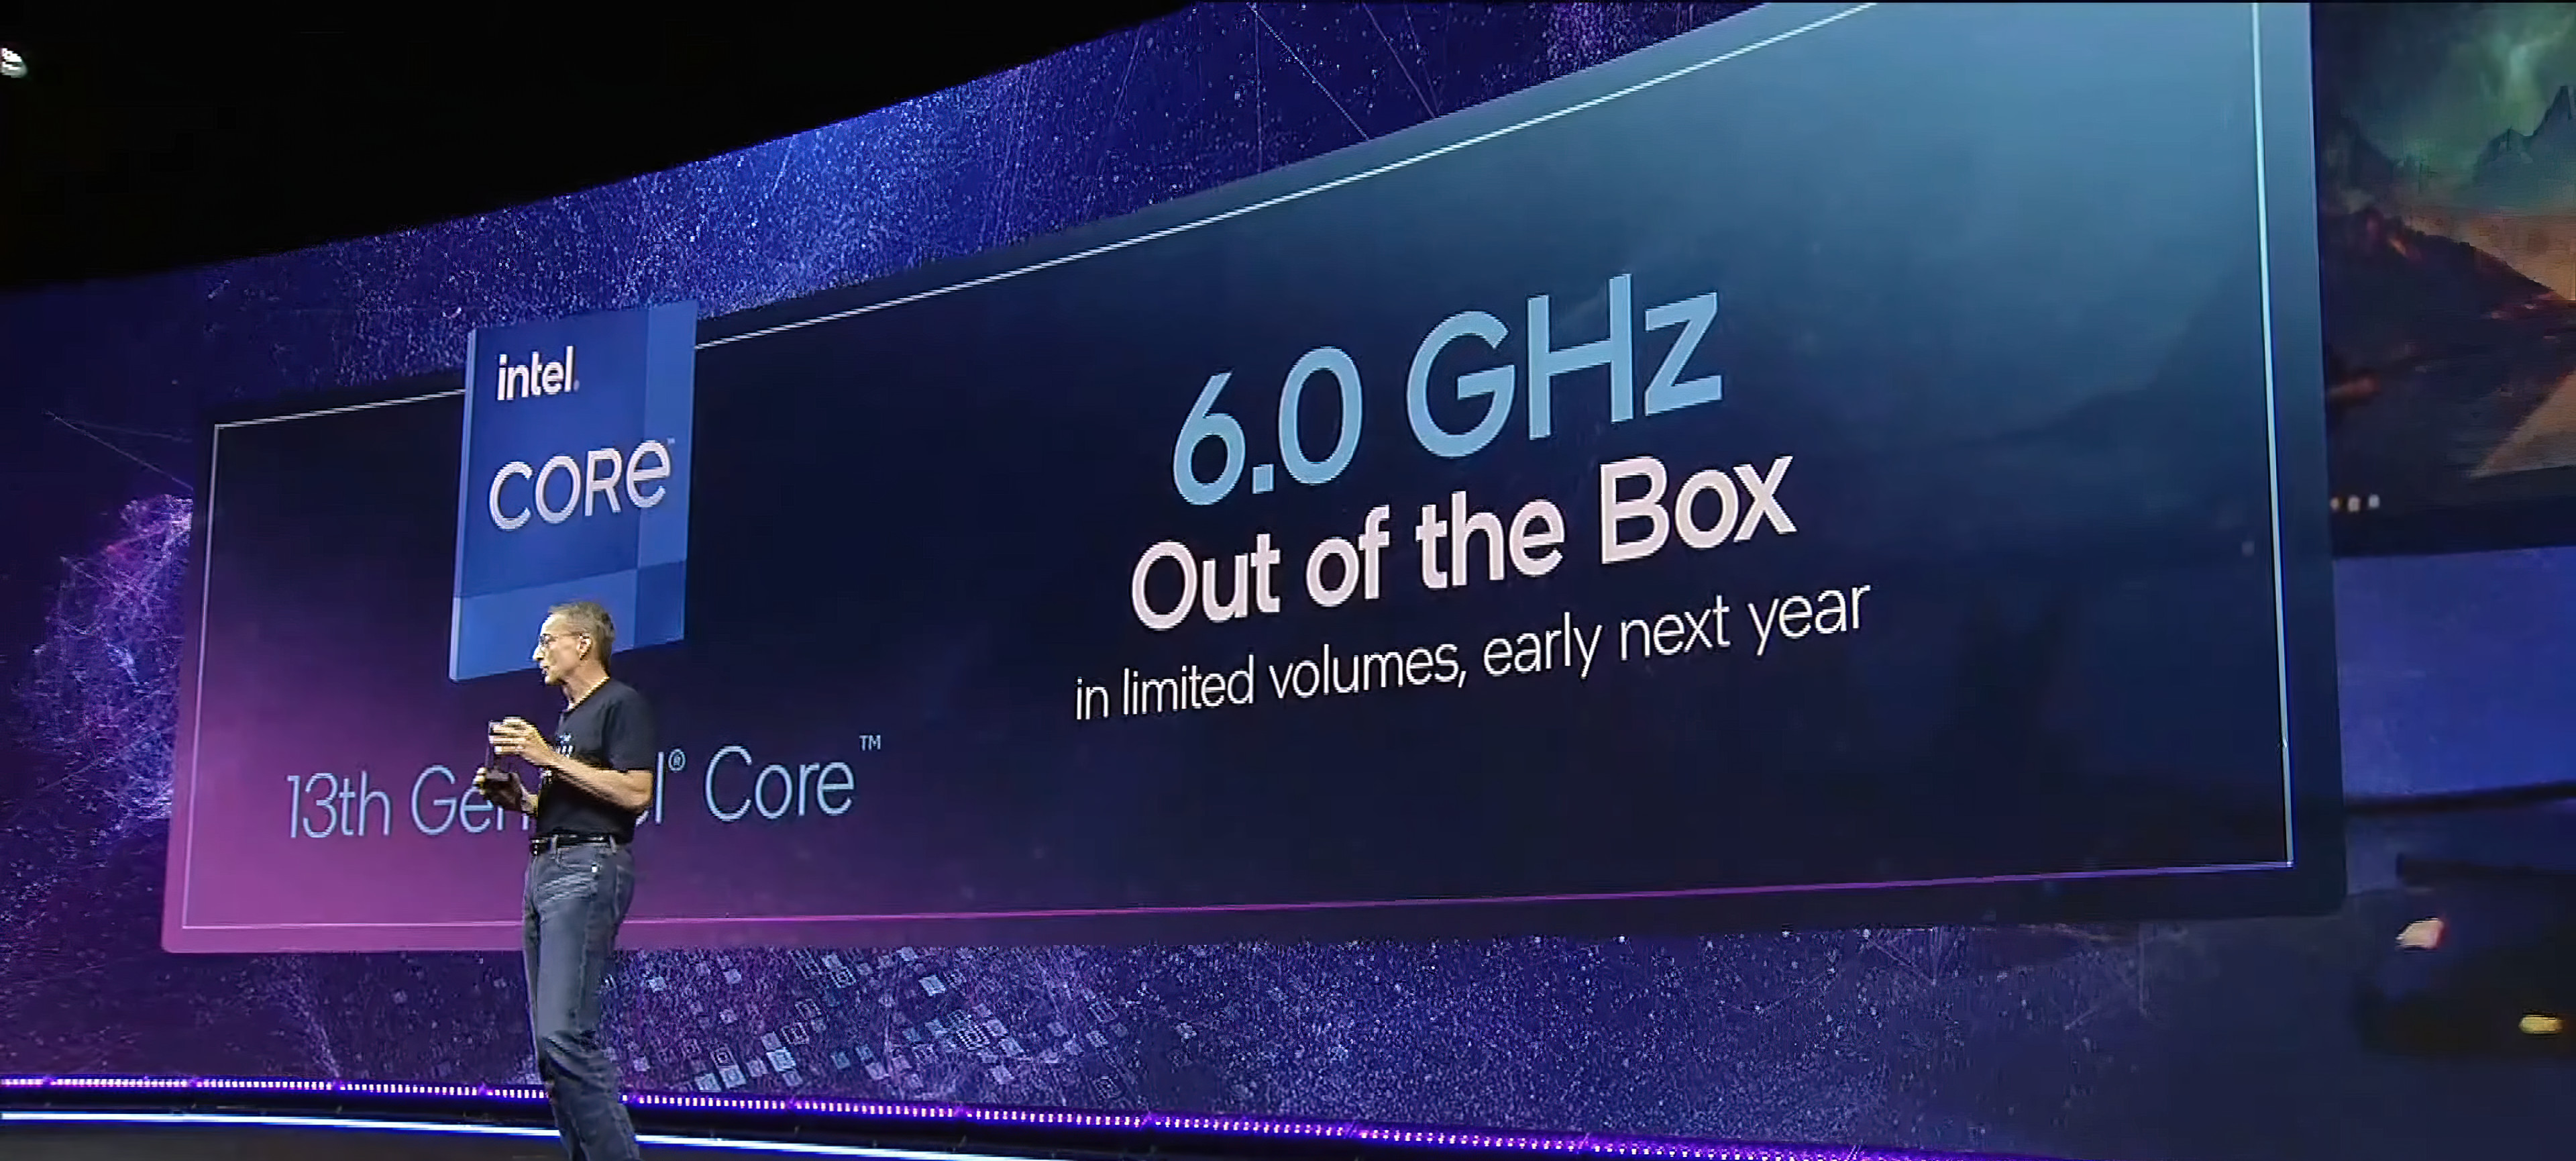 Intel Core i9-13900KS “Raptor Lake”, CPU 6 GHz đầu tiên trên thế giới sẽ ra mắt vào đầu năm 2023